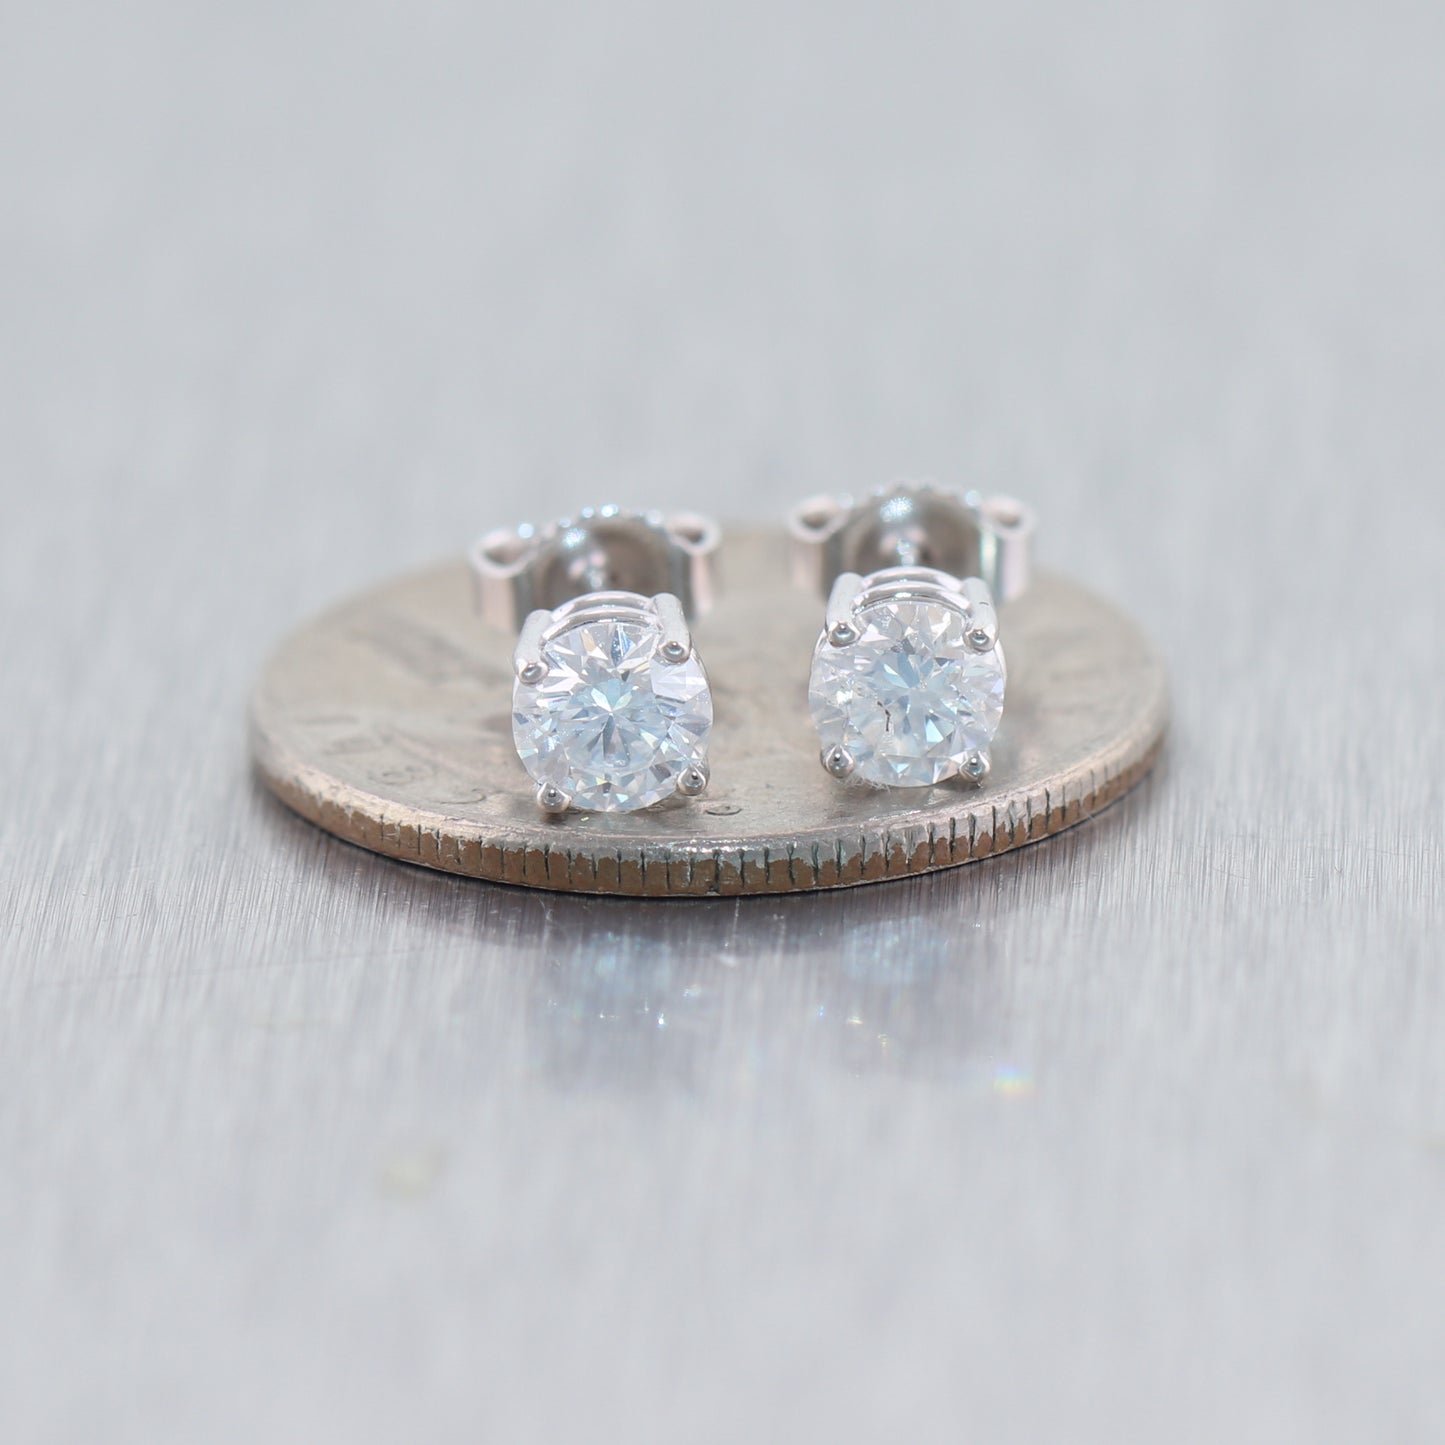 14k White Gold 1.01ctw Diamond Stud Earrings